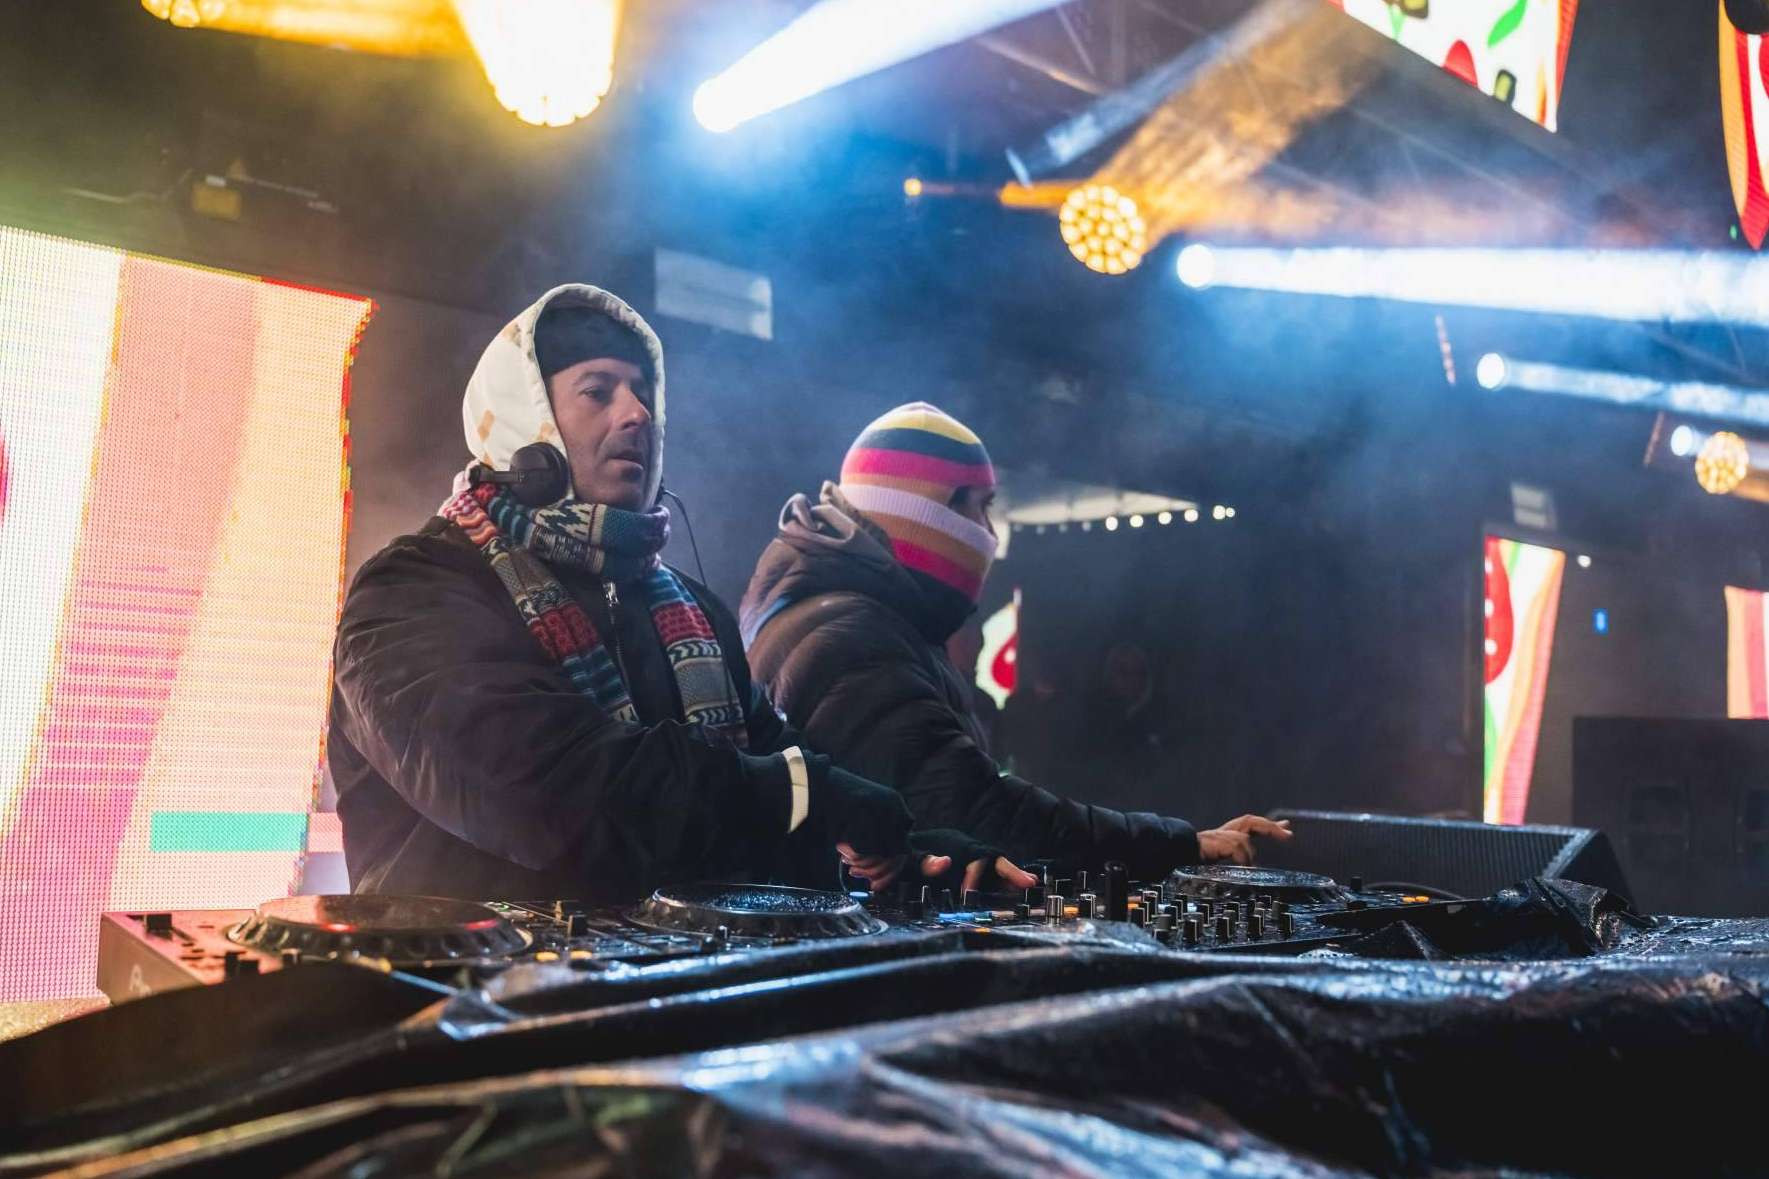  Vuelve a Candanchú Snowdaze, el festival para amantes de la electrónica y la nieve 